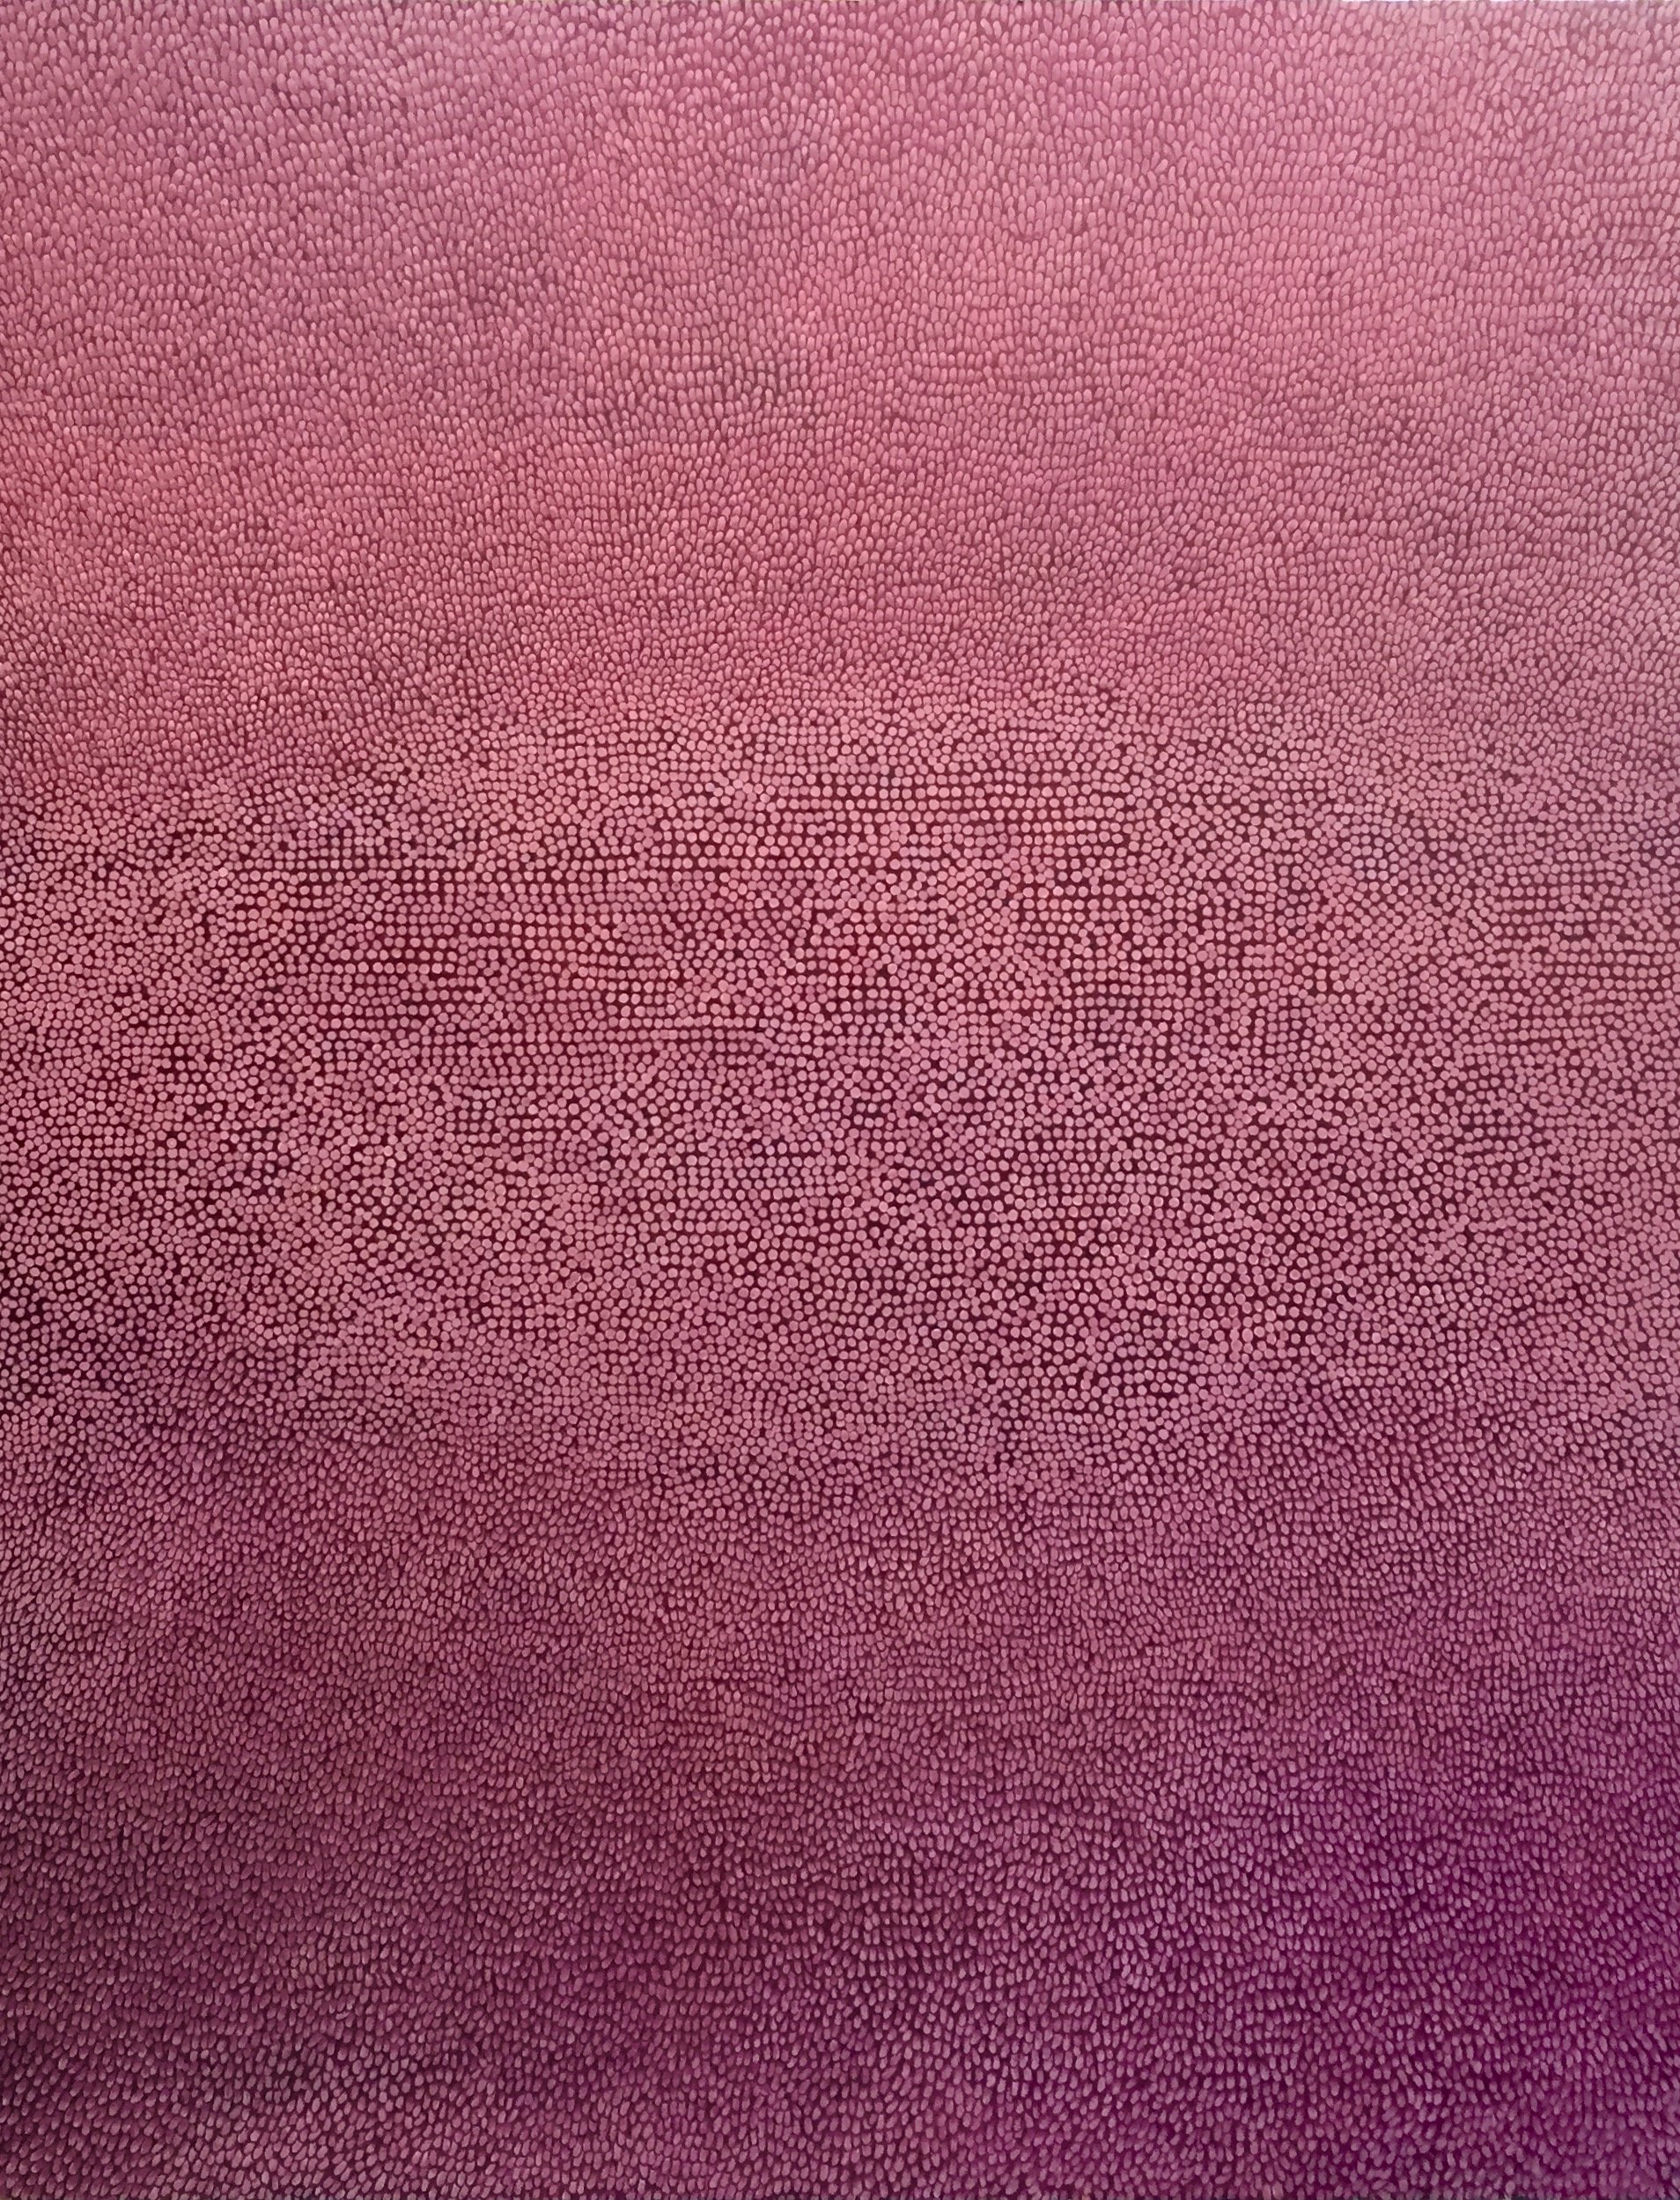 Texture - 2015